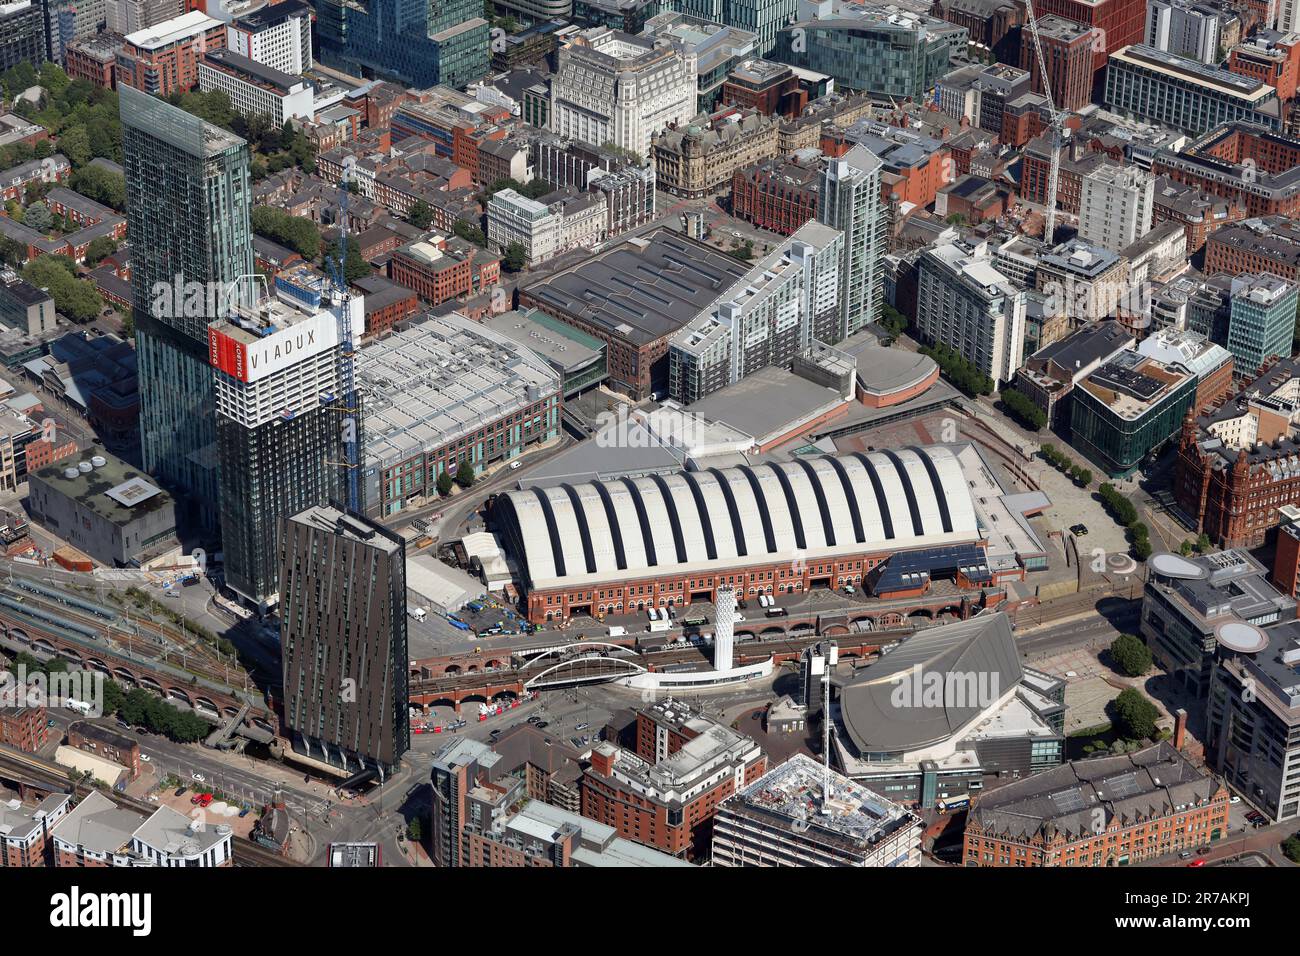 Luftaufnahme des Stadtzentrums von Manchester und insbesondere des Kongresszentrums Manchester Central Convention Complex, des Beetham Tower und der Bridgewater Hall Stockfoto